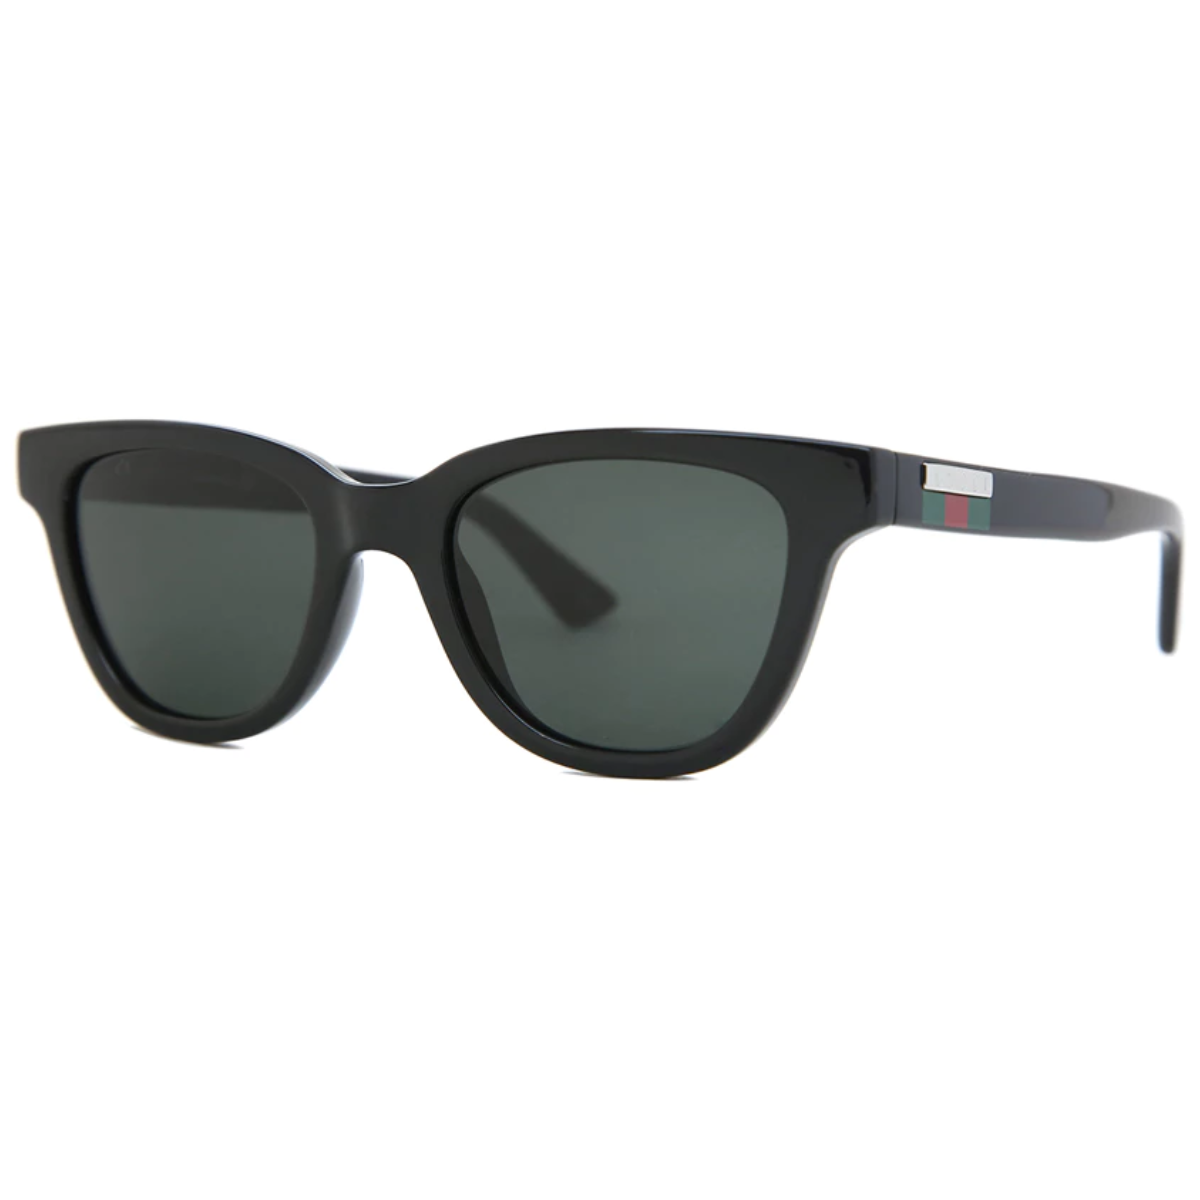 "Stylish Gucci Eyewear - 1116S Sunglasses"